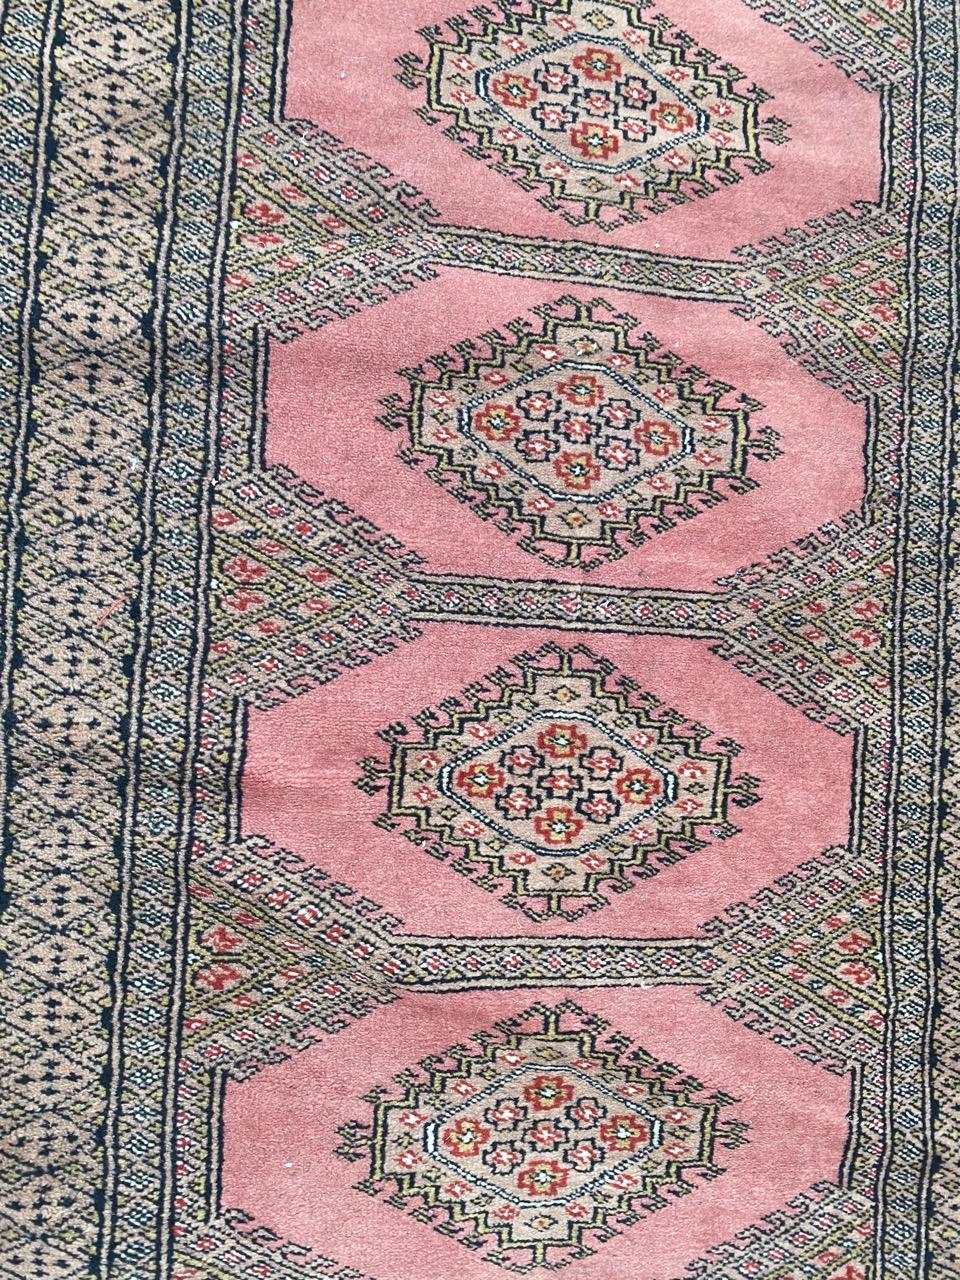 Schöner turkmenischer Designteppich mit geometrischem Muster und schönen Farben, vollständig und fein handgeknüpft mit Wollsamt auf Baumwollgrund.